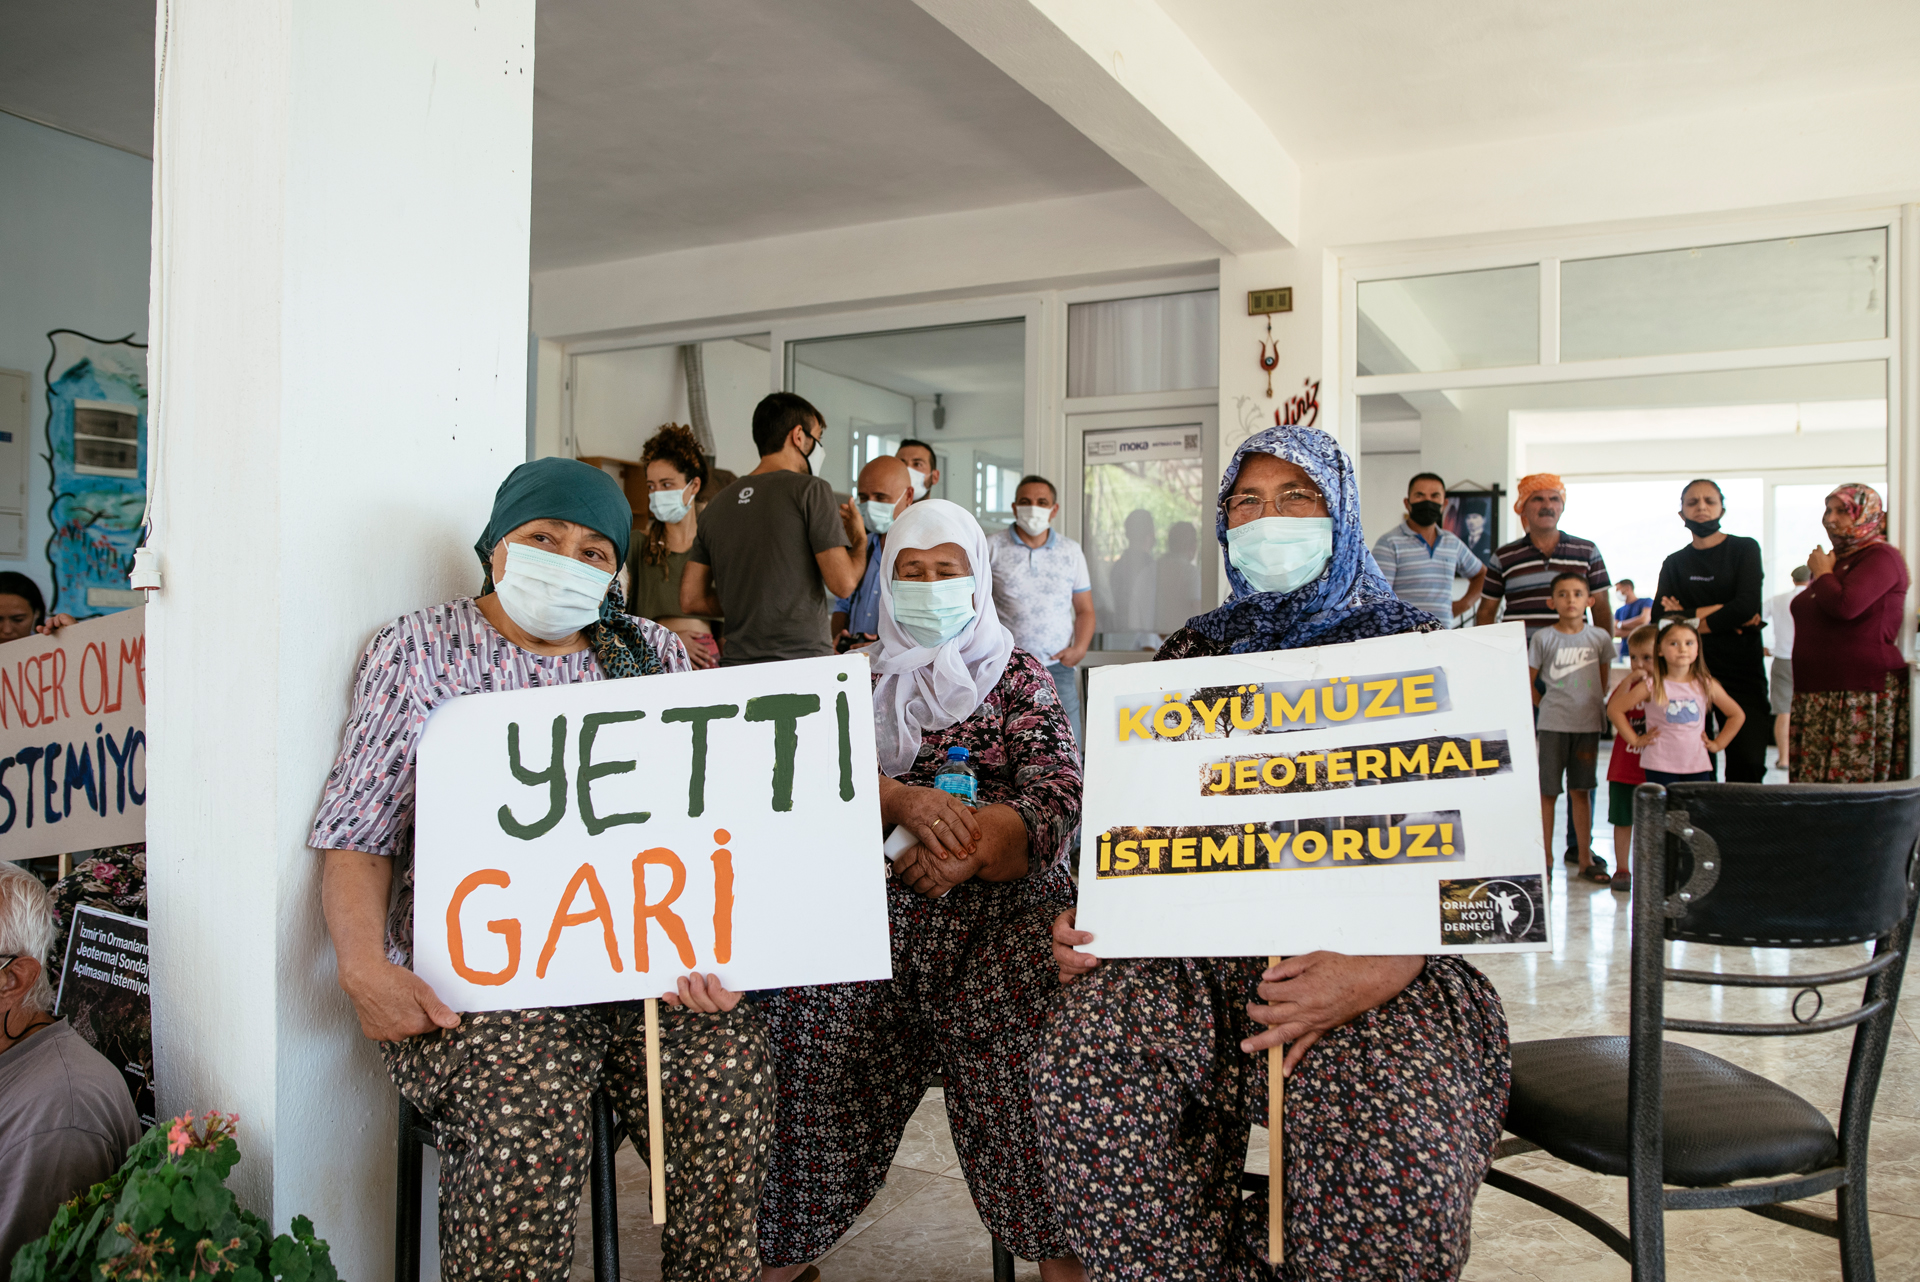 Orhanlı köylüleri jeotermal santrale karşı mücadele veriyor: “Orhanlı sahipsiz değildir”